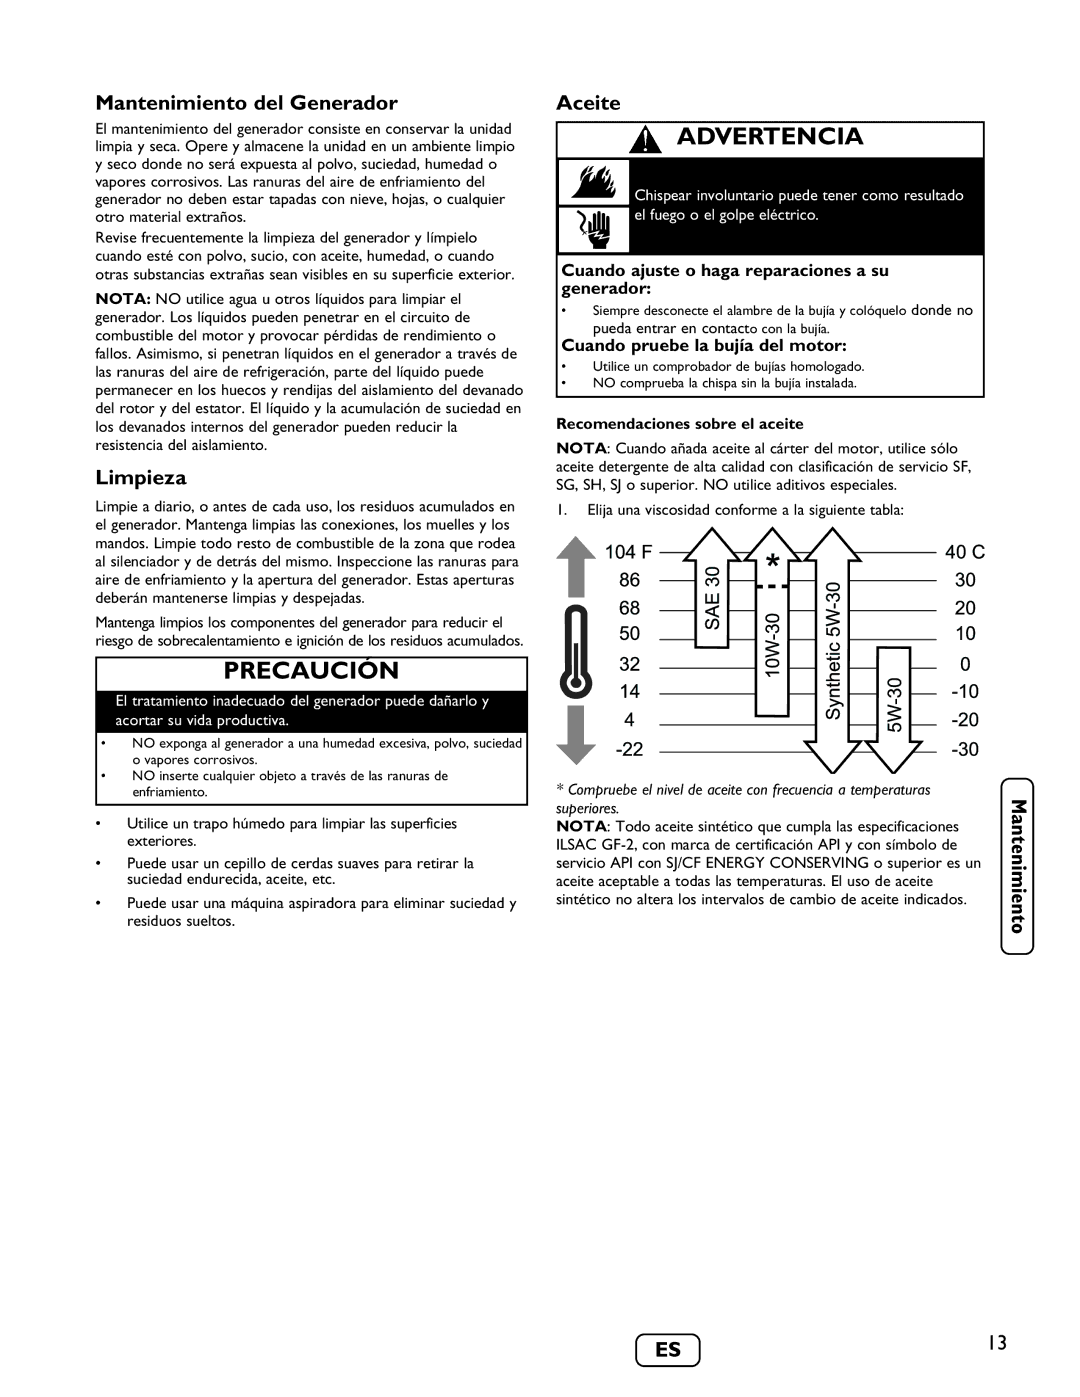 Briggs & Stratton 030235-01 manual Mantenimiento del Generador, Limpieza, Aceite, Recomendaciones sobre el aceite 